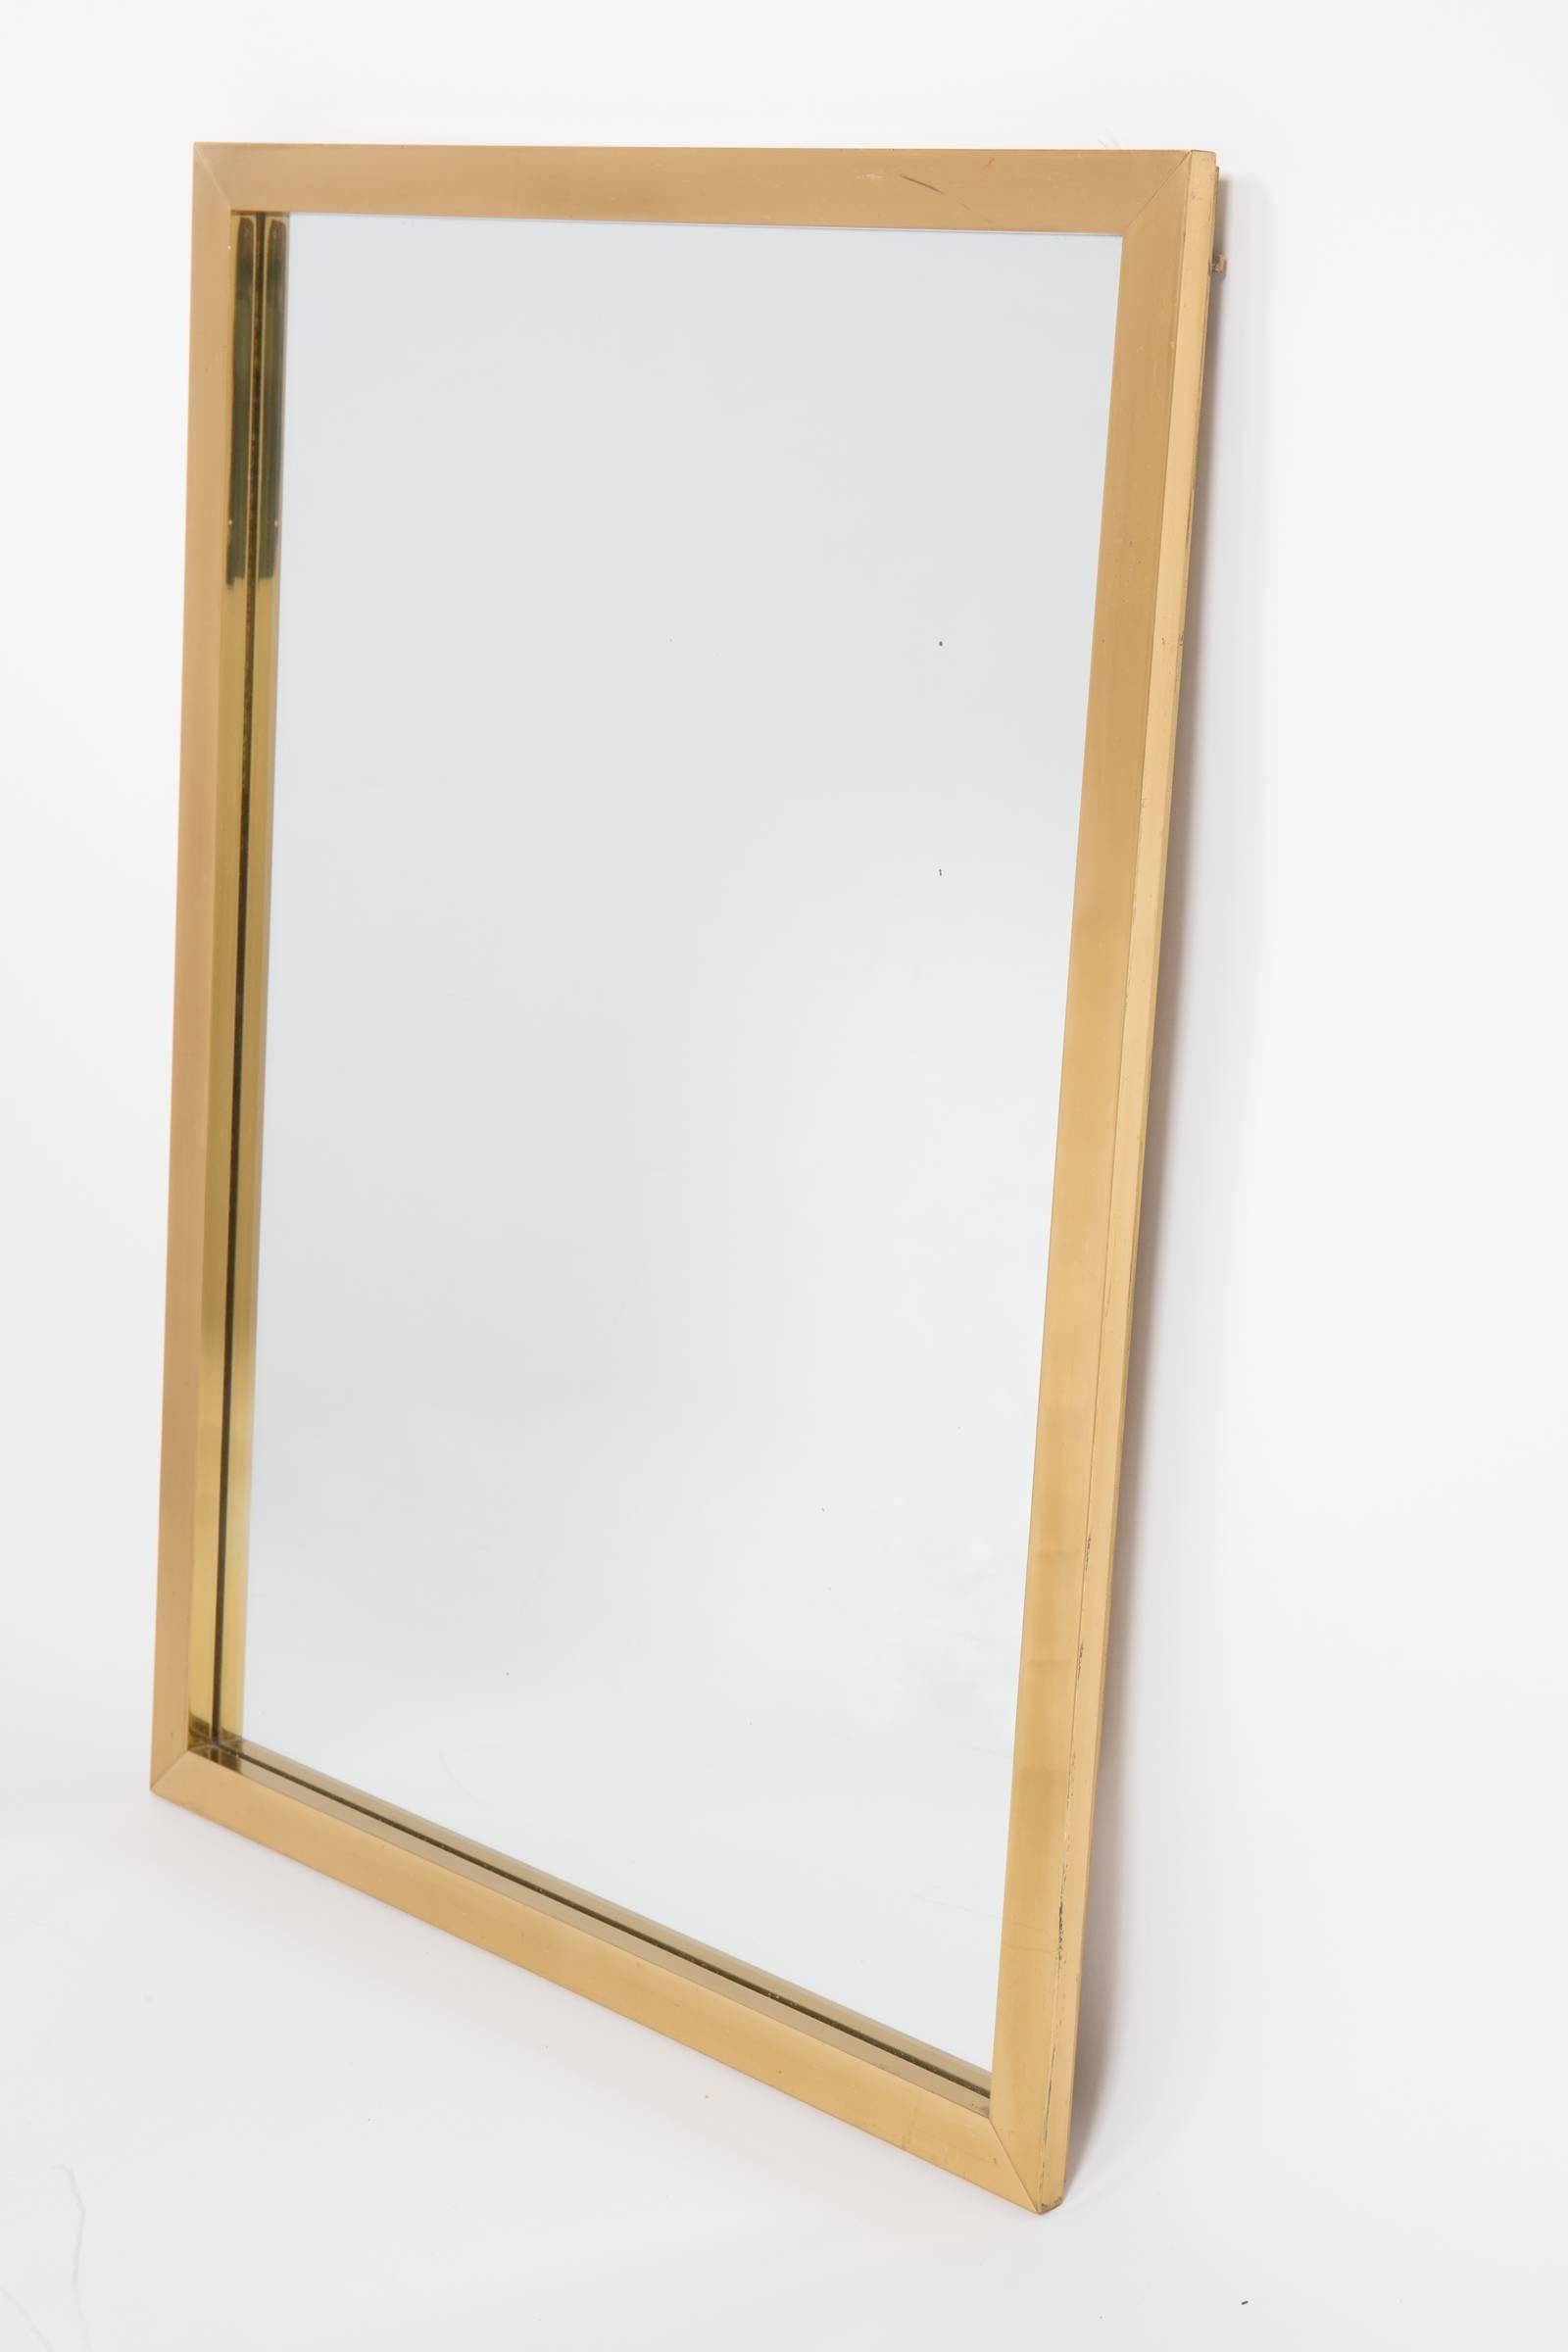 brass mirror trim